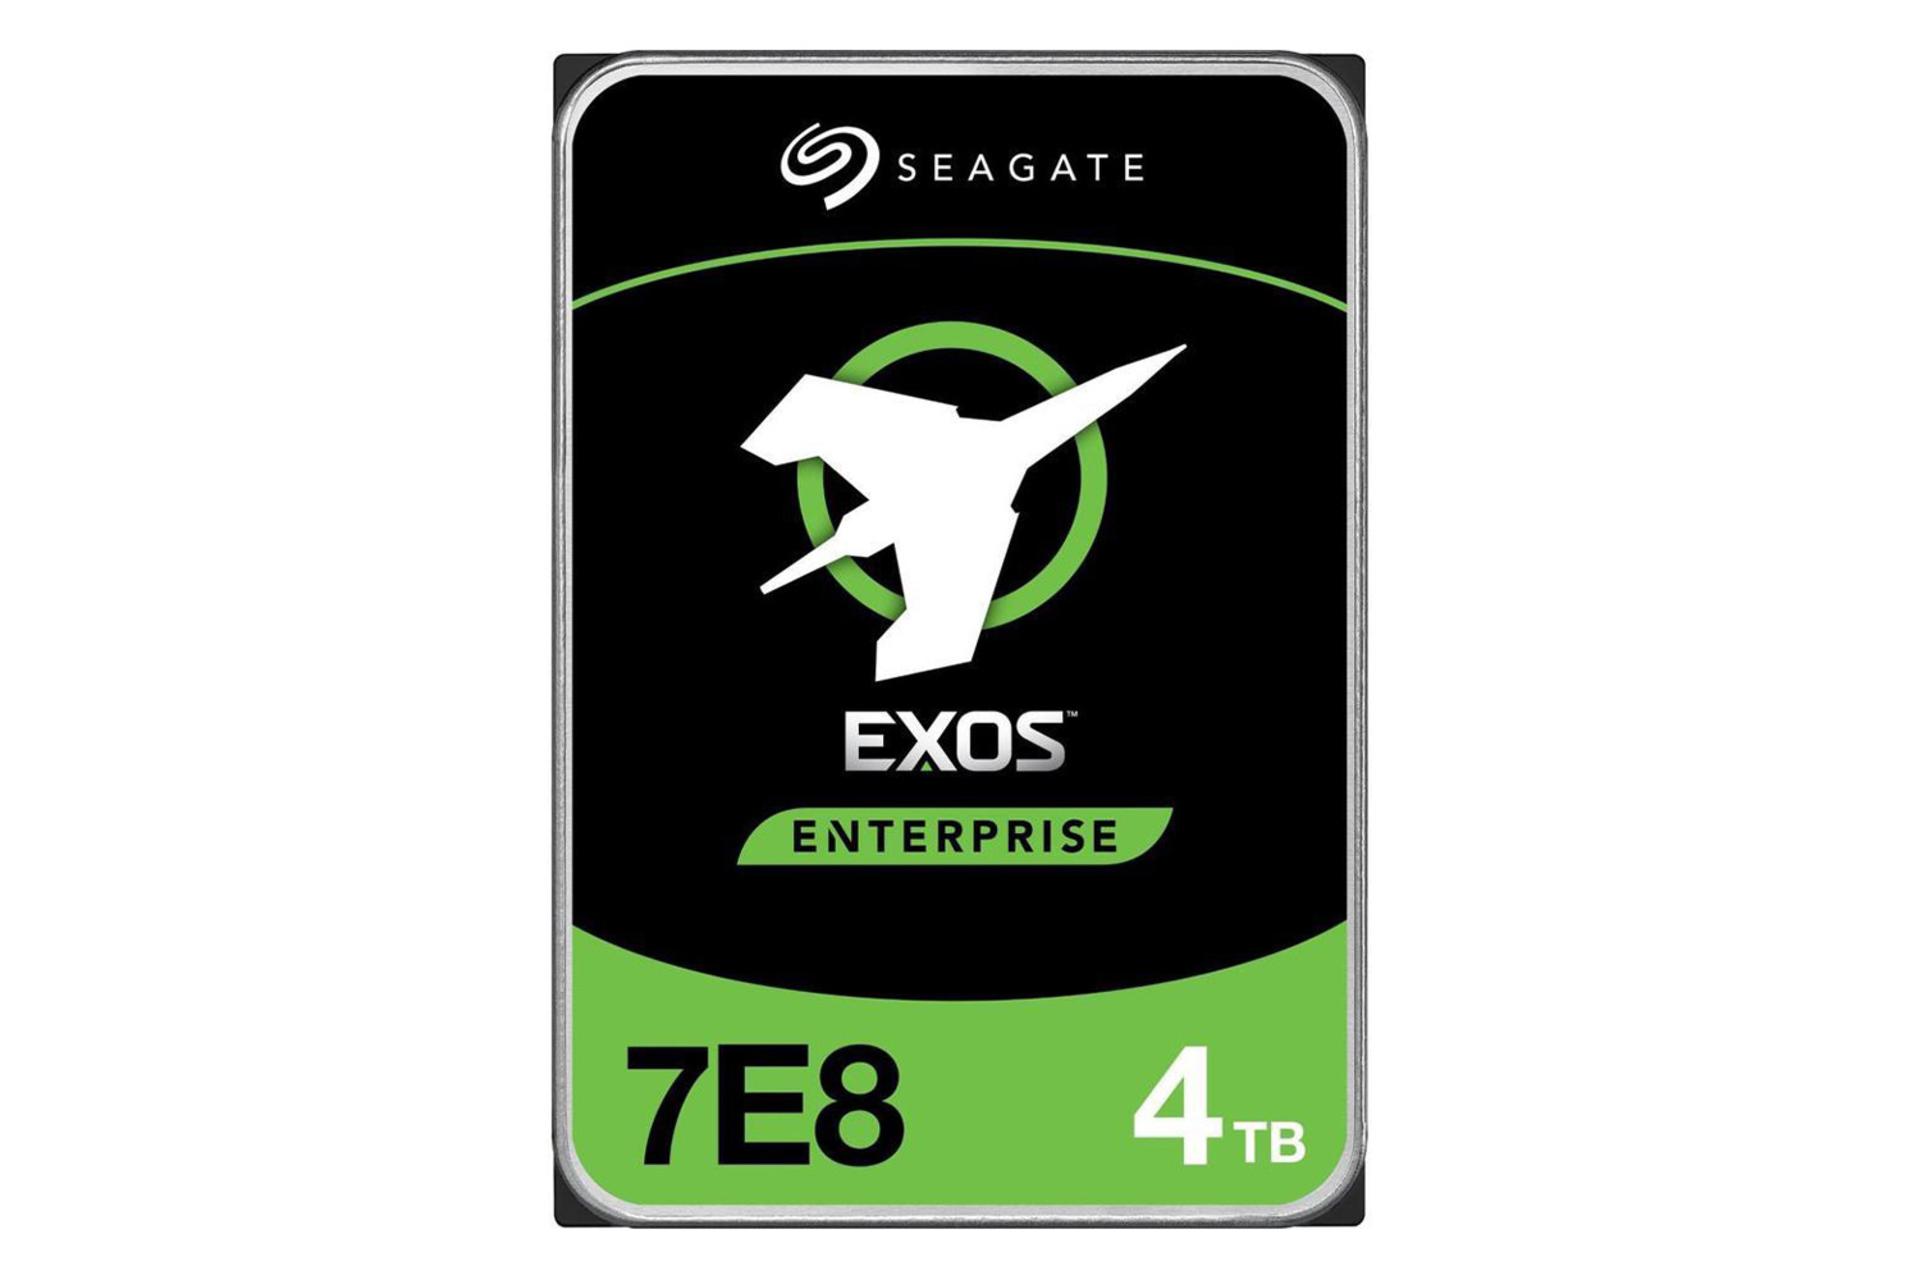 Seagate Exos 7E8 ST4000NM000A 4TB / سیگیت Exos ST4000NM000A 7E8 ظرفیت 4 ترابایت